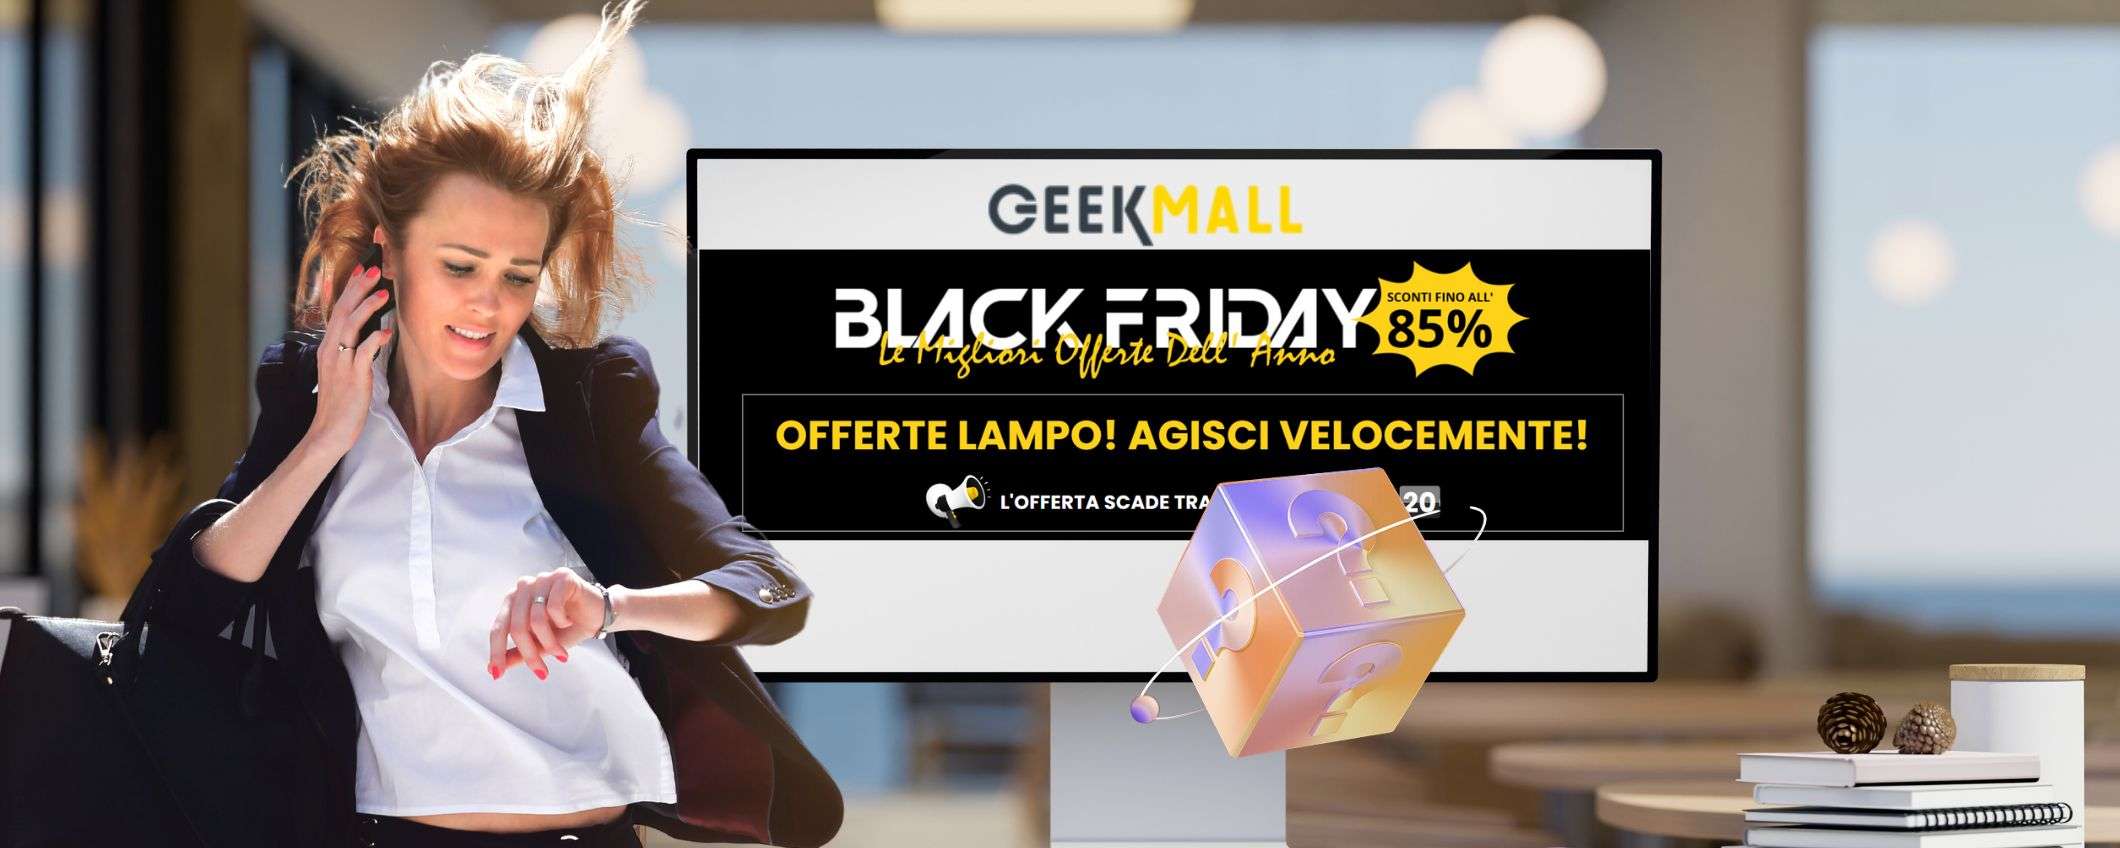 Black Friday 2023: sconti imperdibili su Geekmall fino all'85%